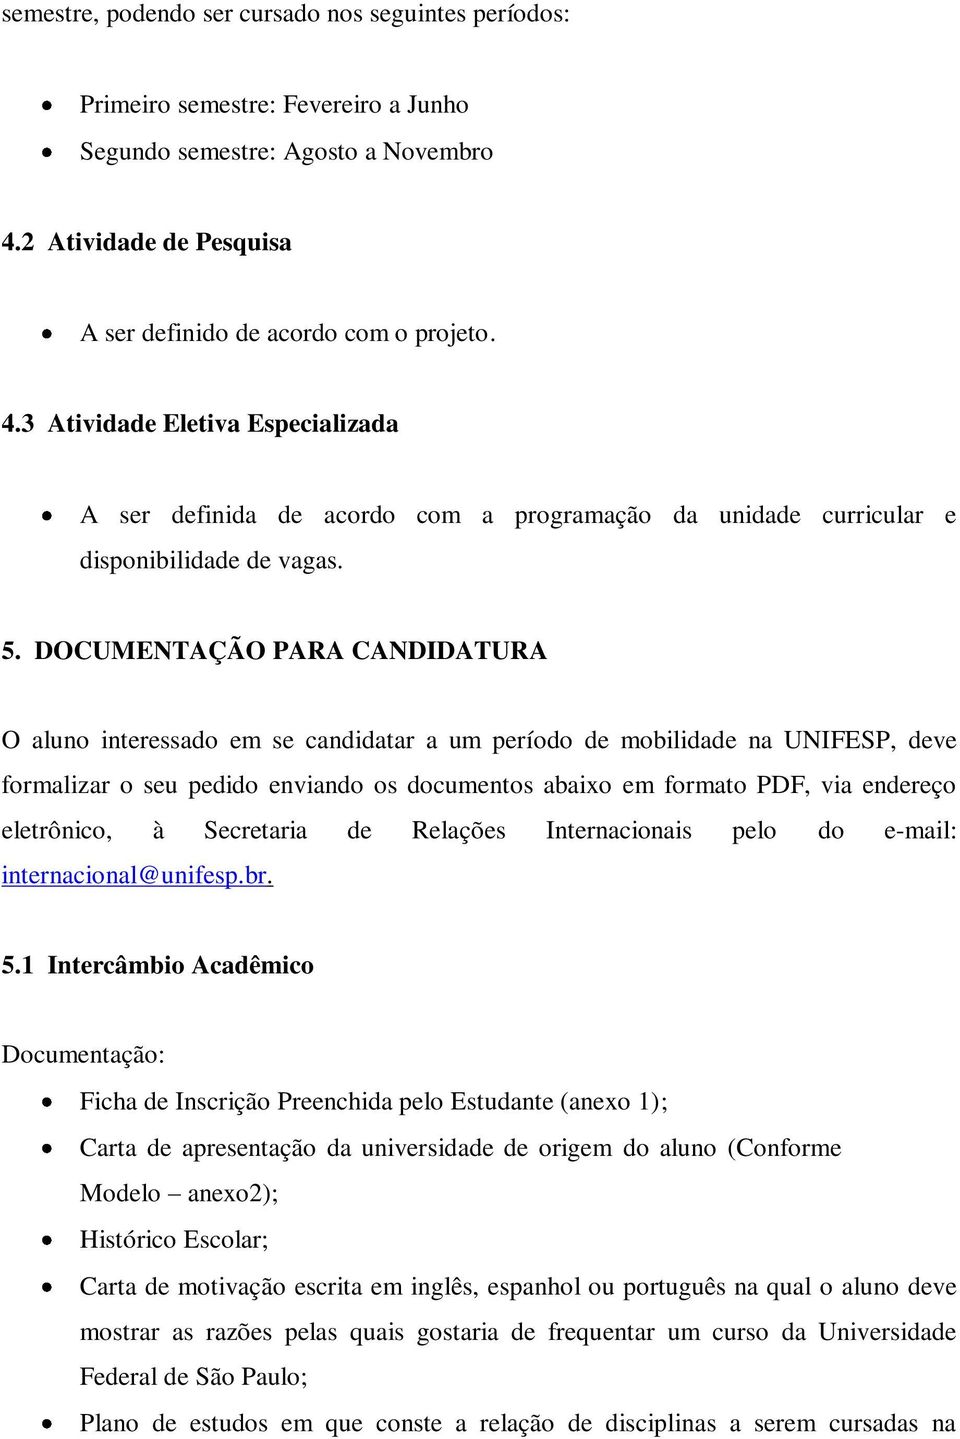 DOCUMENTAÇÃO PARA CANDIDATURA O aluno interessado em se candidatar a um período de mobilidade na UNIFESP, deve formalizar o seu pedido enviando os documentos abaixo em formato PDF, via endereço